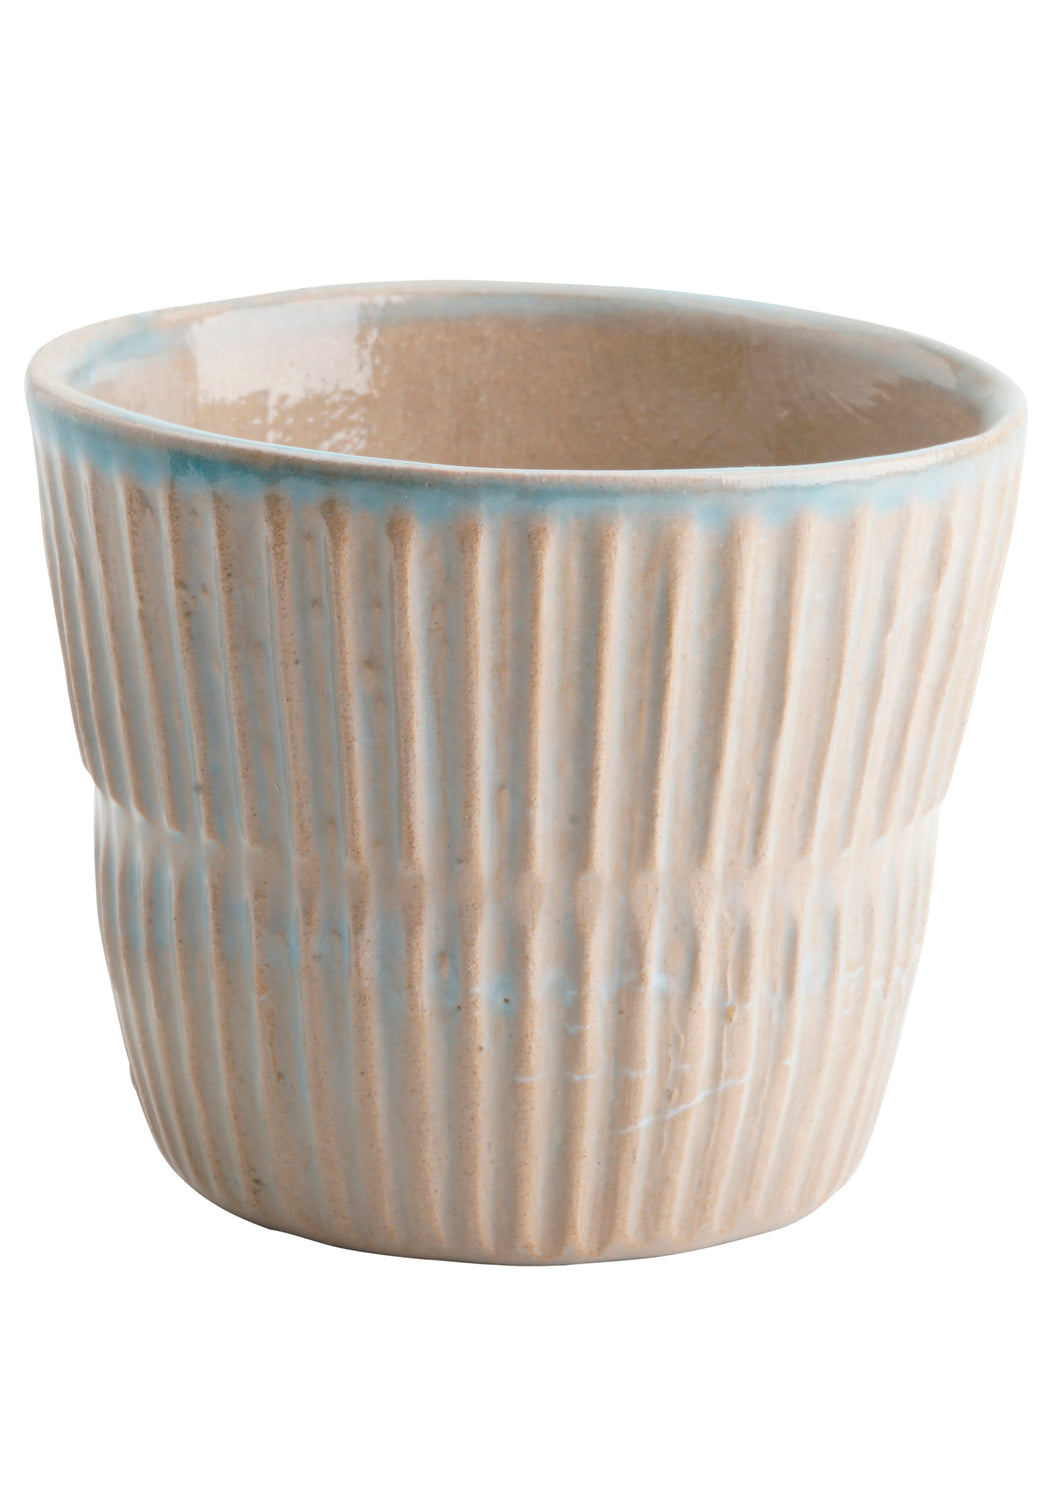 GiùinLab Marigold Kaffekop - Terracotta Blå